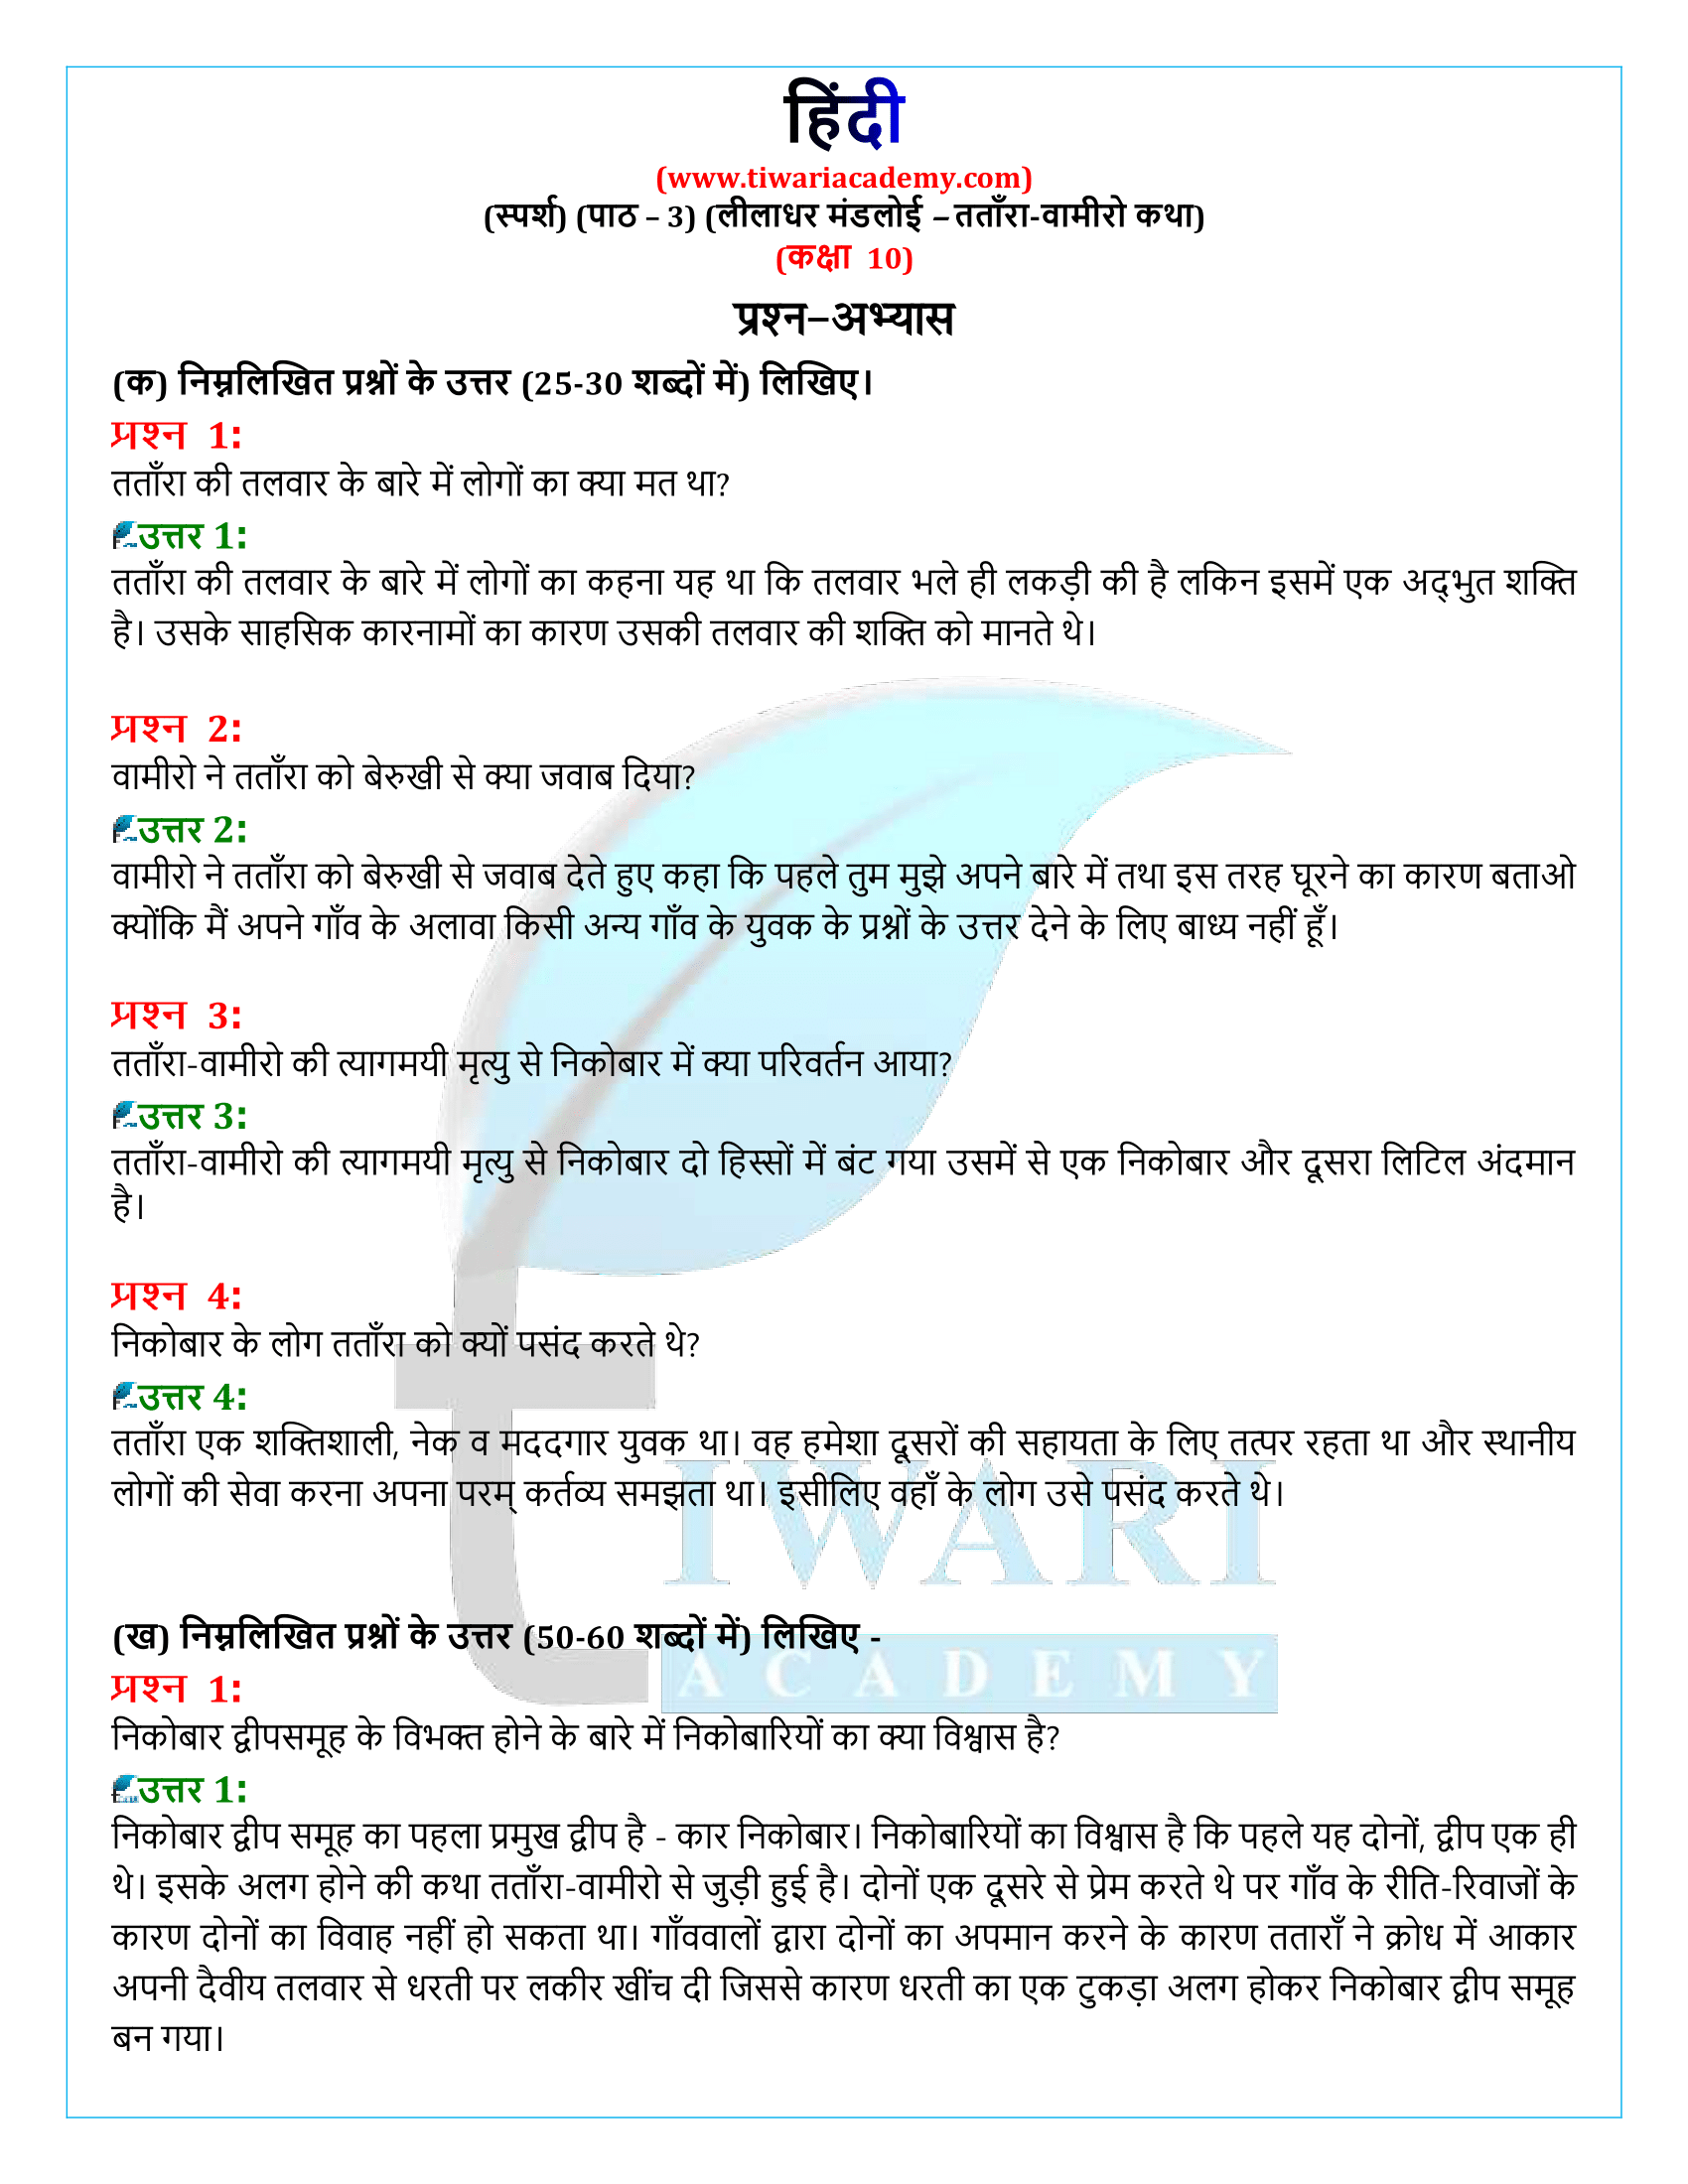 कक्षा 10 हिंदी स्पर्श अध्याय 3 के प्रश्न उत्तर